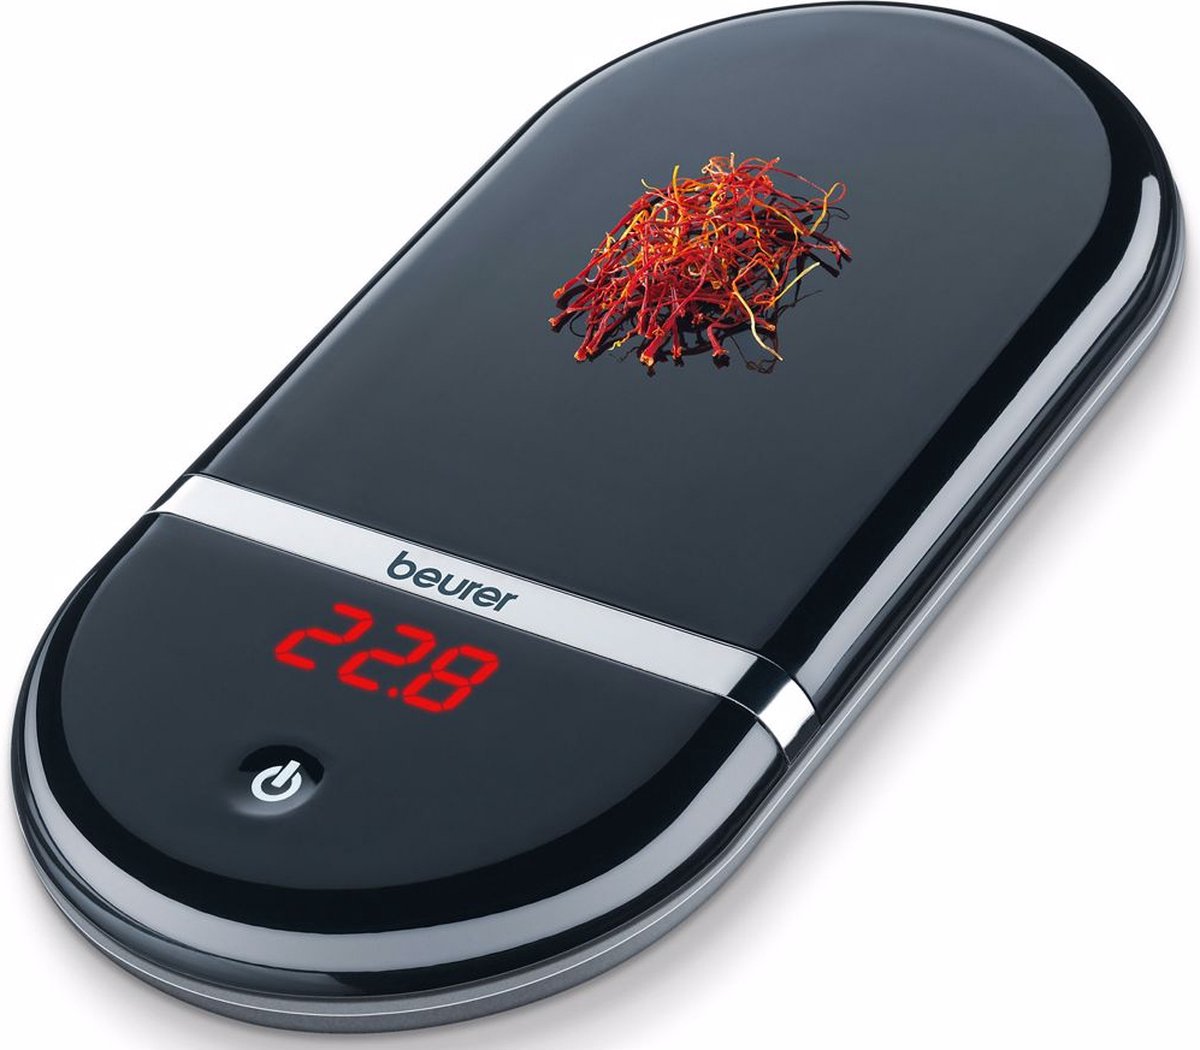 Beurer KS 36 Digitale keukenweegschaal - Precisieweegschaal - Kalibratie met justeergewicht - Op 0.1-0.5 g nauwkeurig - Tarra - Tot 2 kg - Magic LED display - Automatische uitschakeling - Incl. batterijen - 5 Jaar garantie - Beurer